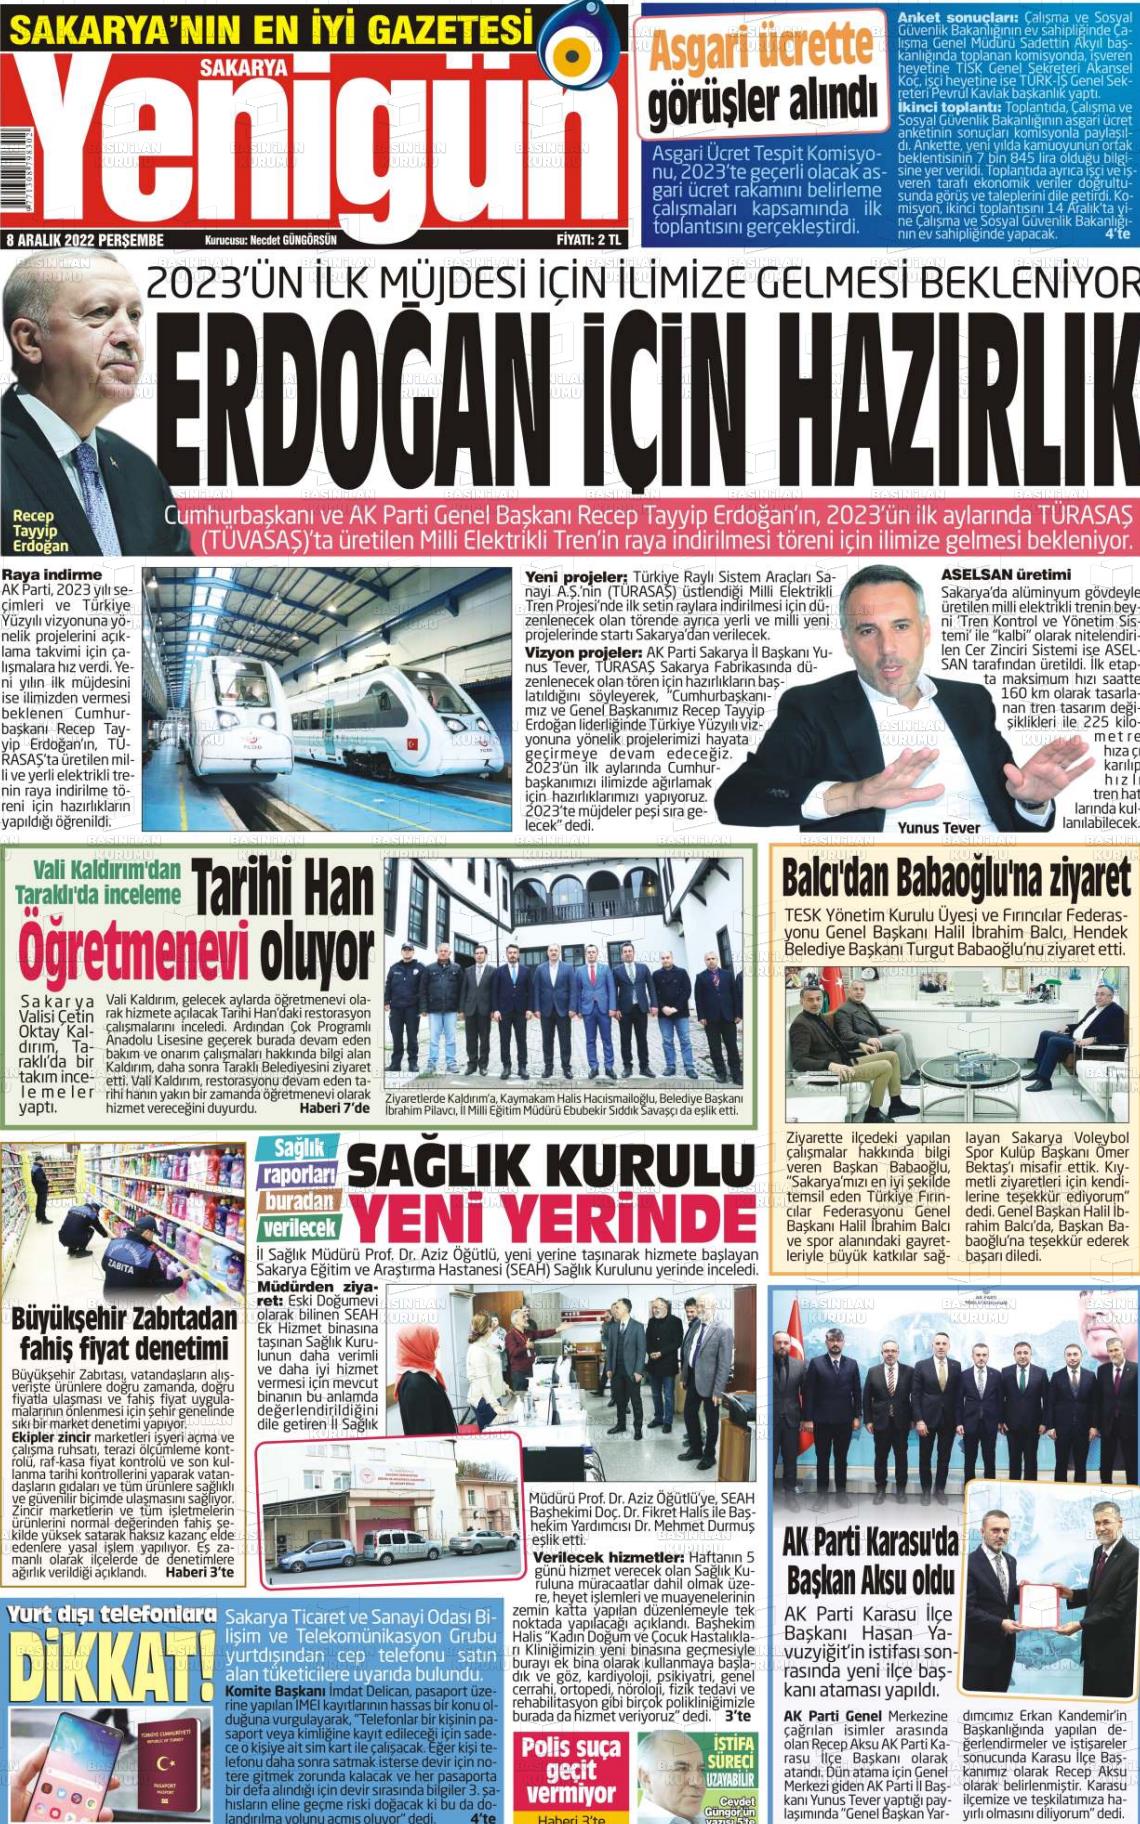 08 Aralık 2022 Sakarya Yenigün Gazete Manşeti